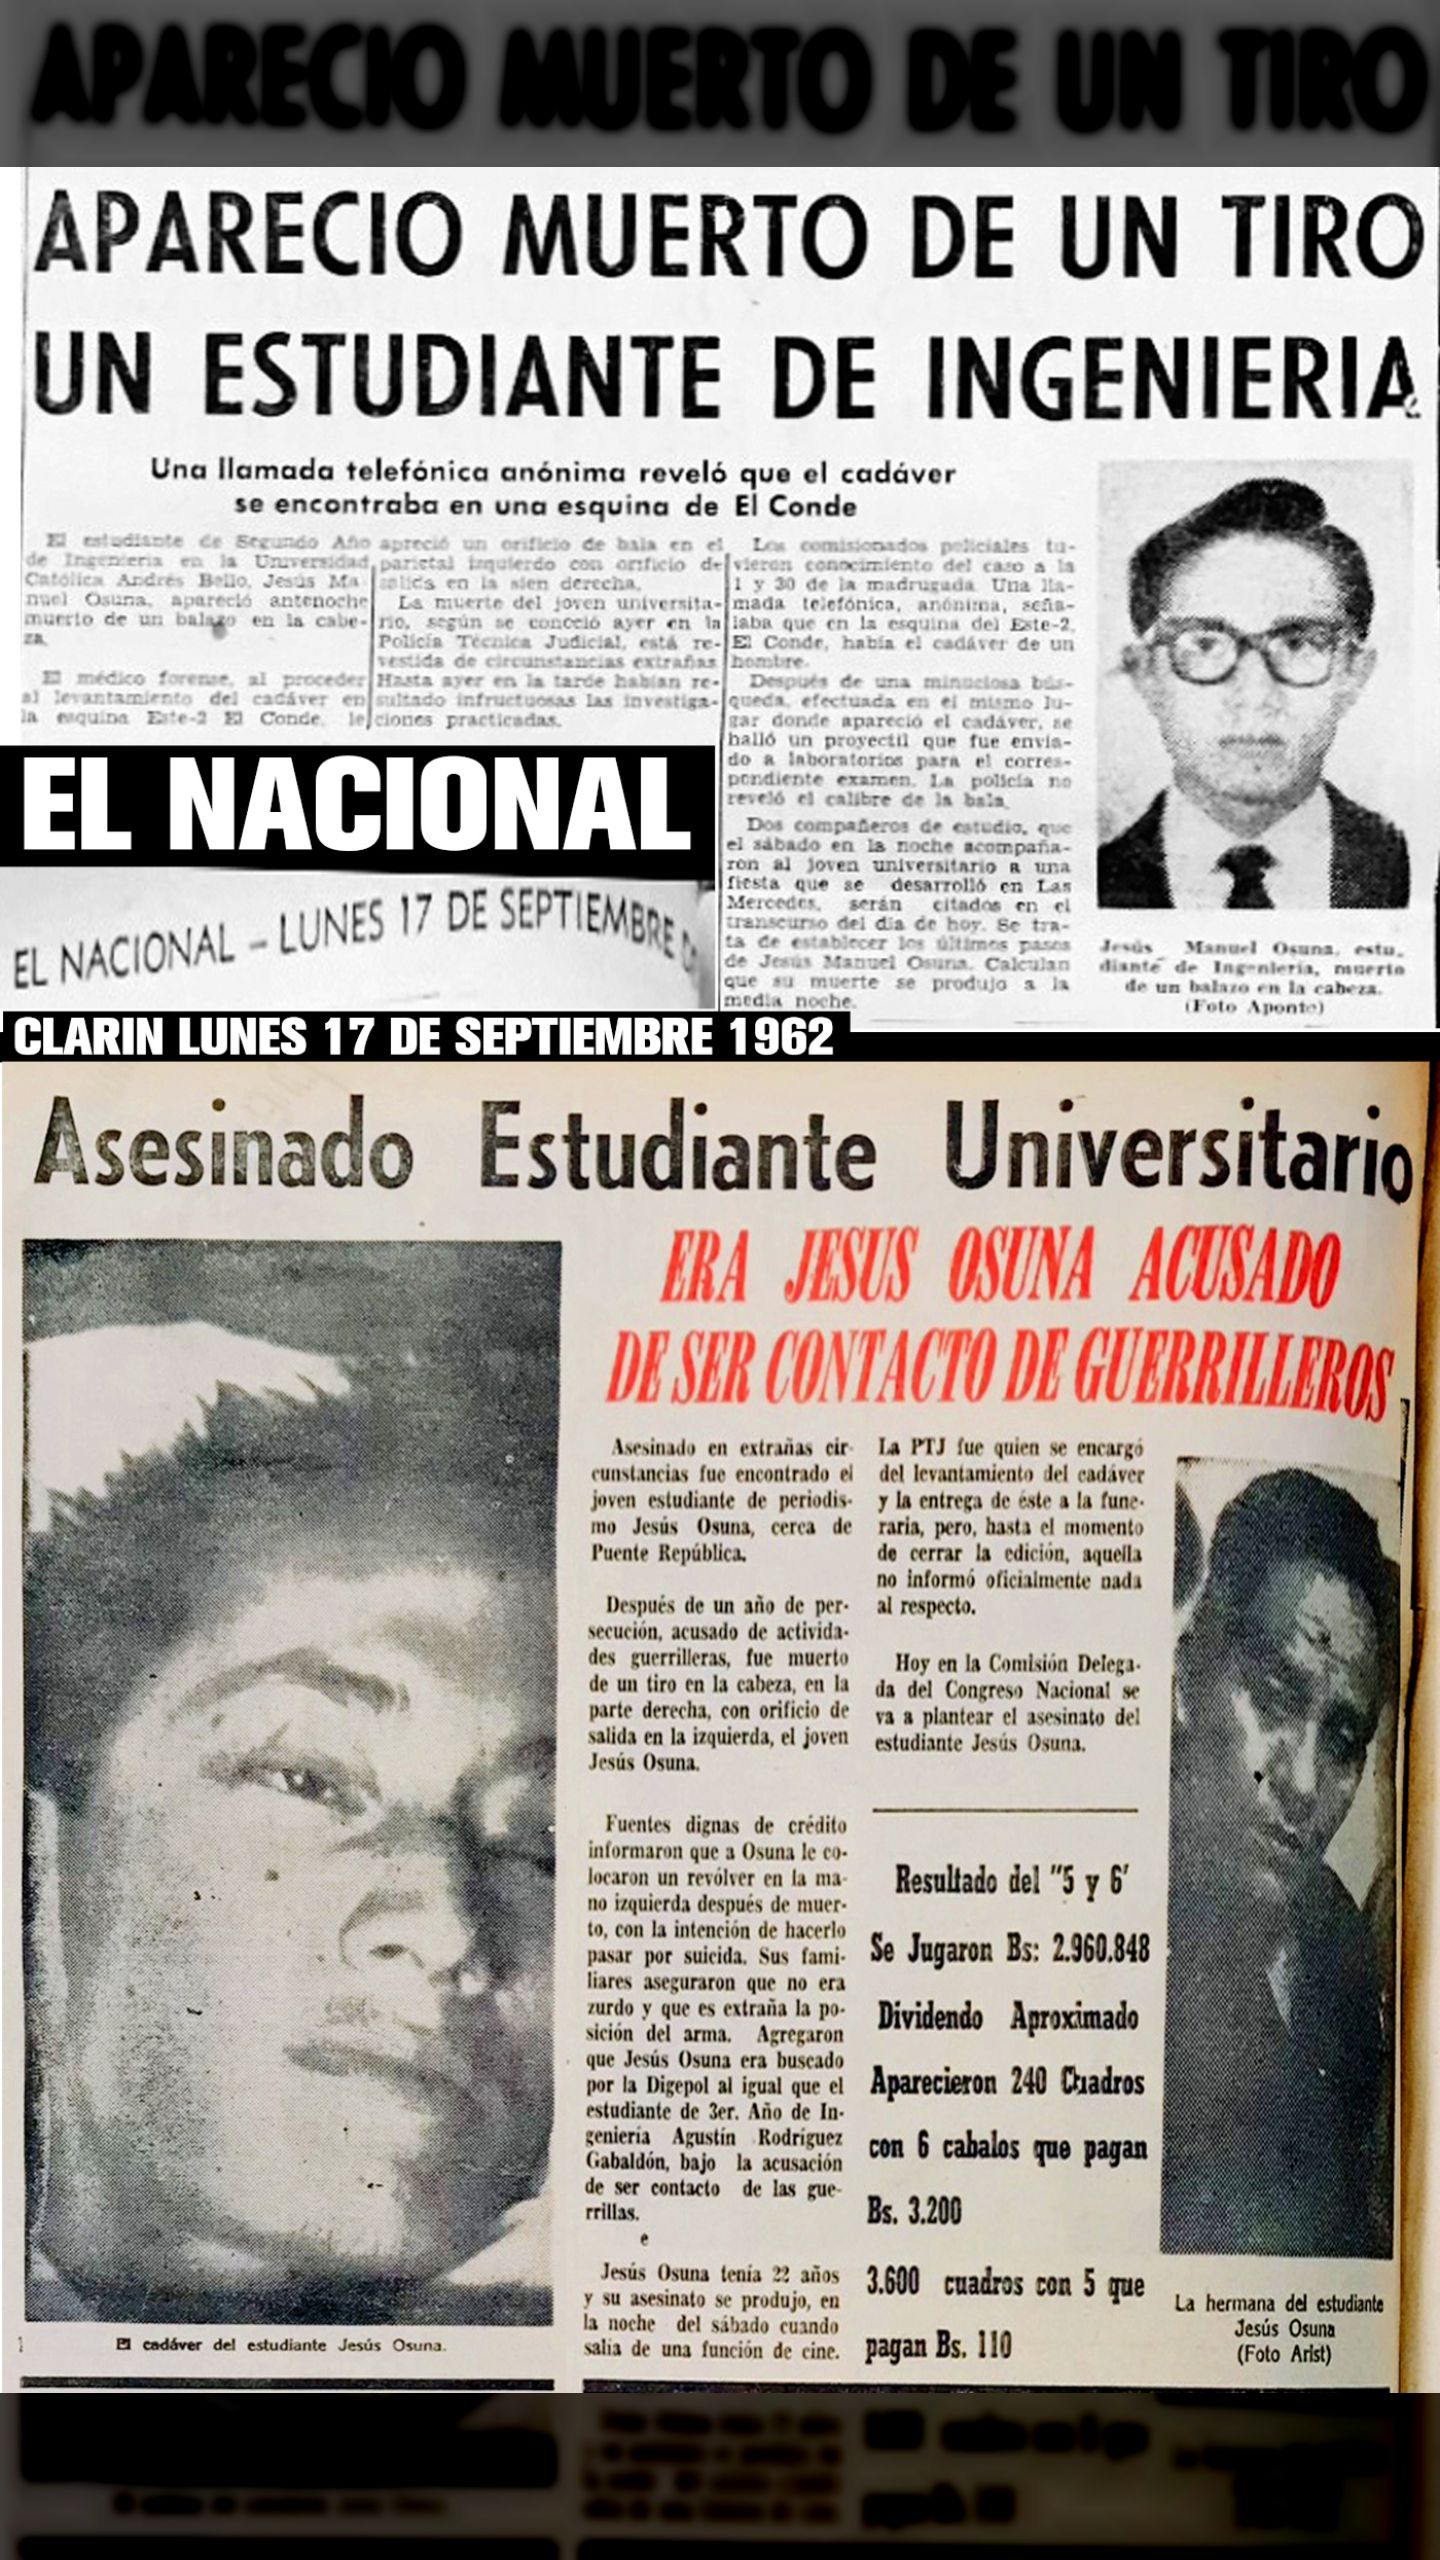 APARECIÓ MUERTO DE UN TIRO ESTUDIANTE JESÚS MANUEL OSUNA (EL NACIONAL y CLARÍN, 17 DE SEPTIEMBRE 1962)